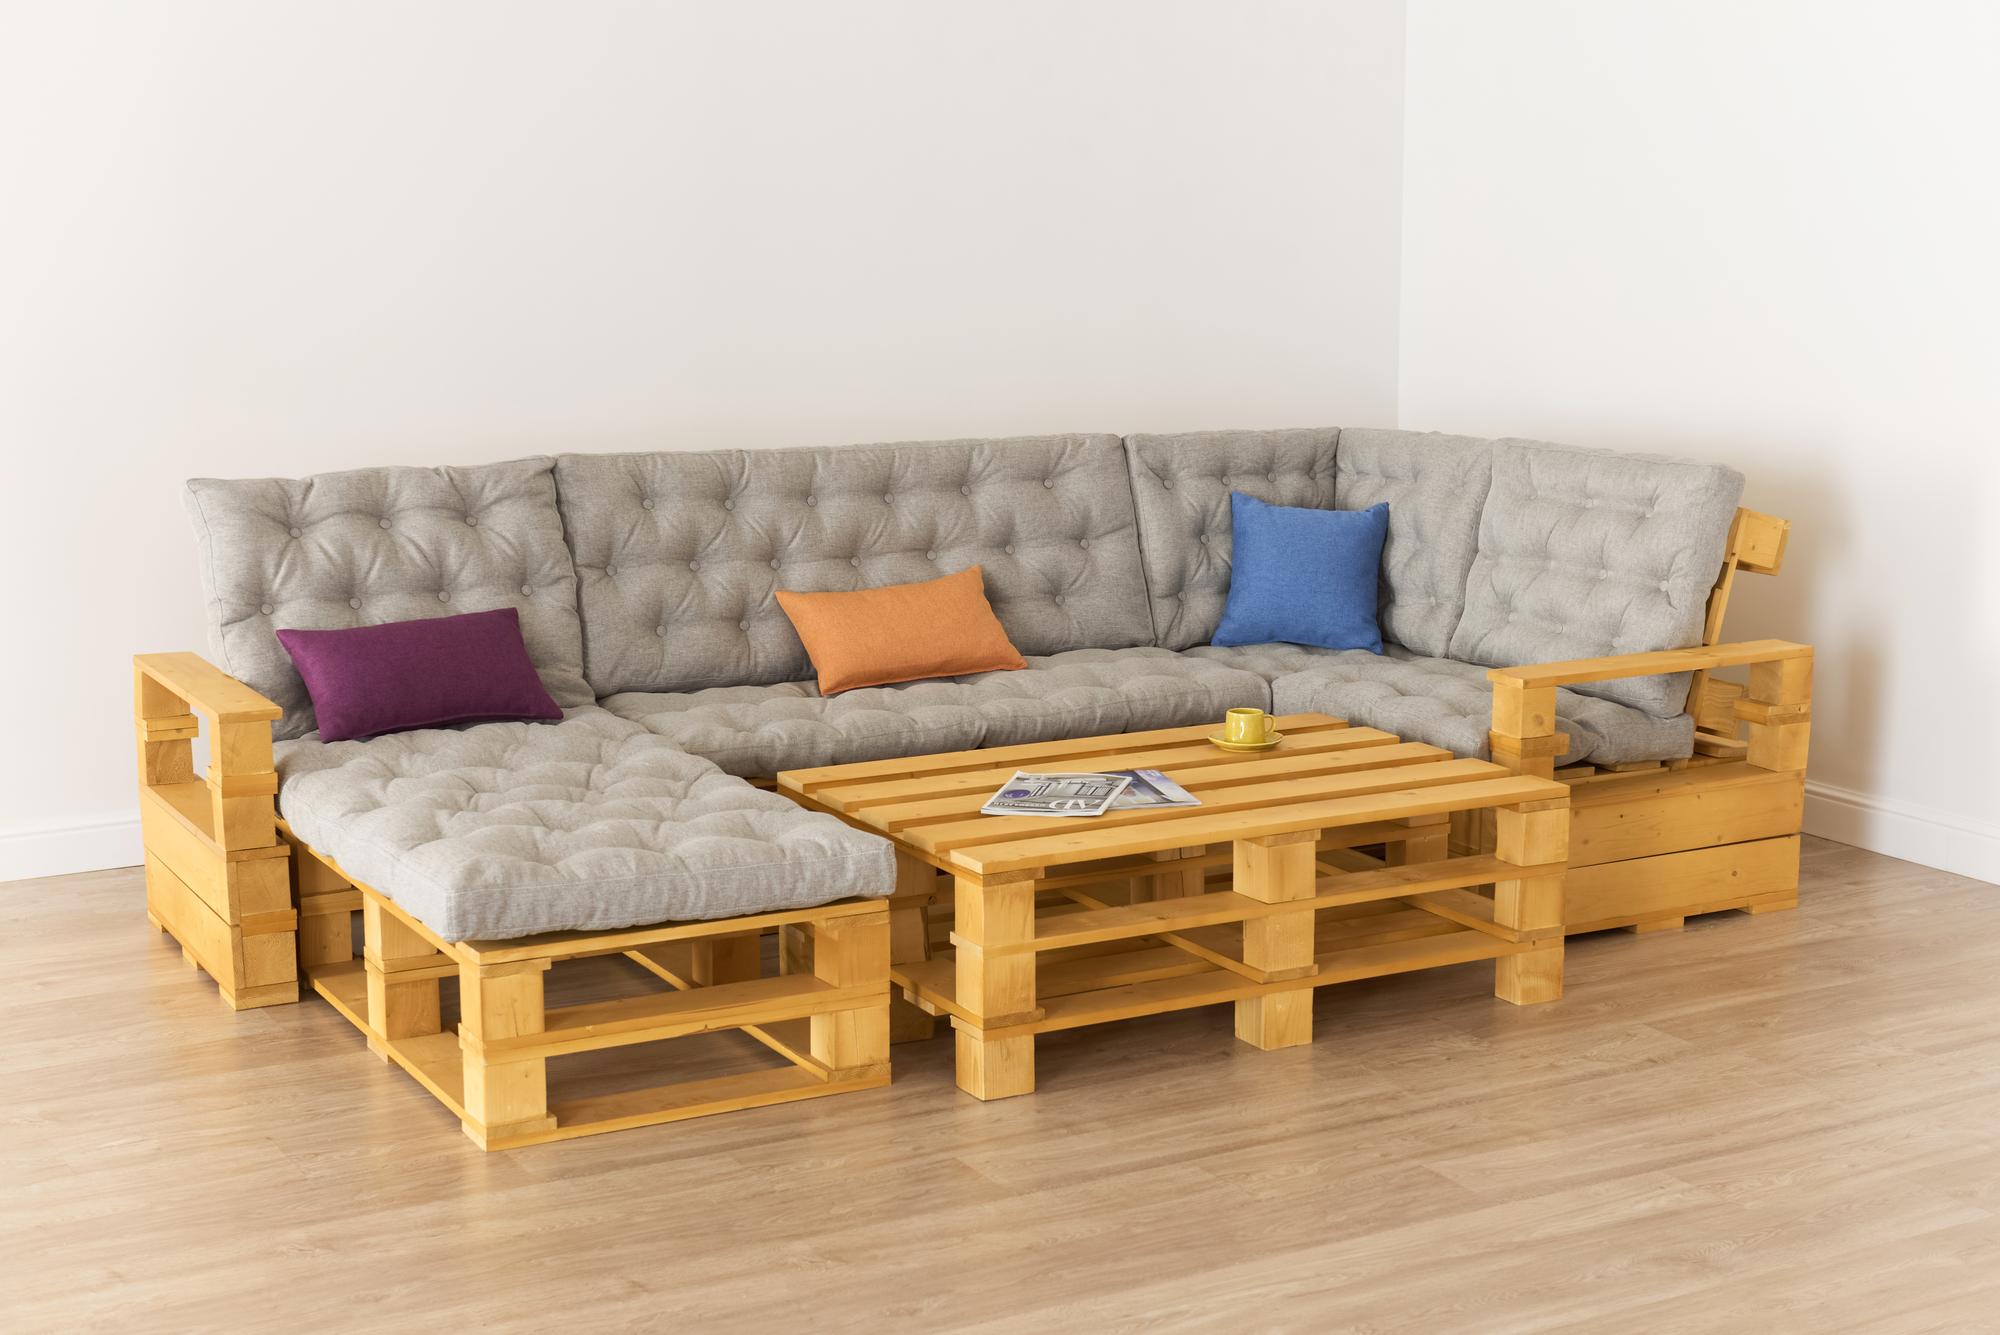 Купить Подлокотник + Диван 70 + угловой диван + диван 140 + козетка + подлокотник + стол большой от производителя “Архитектория” 